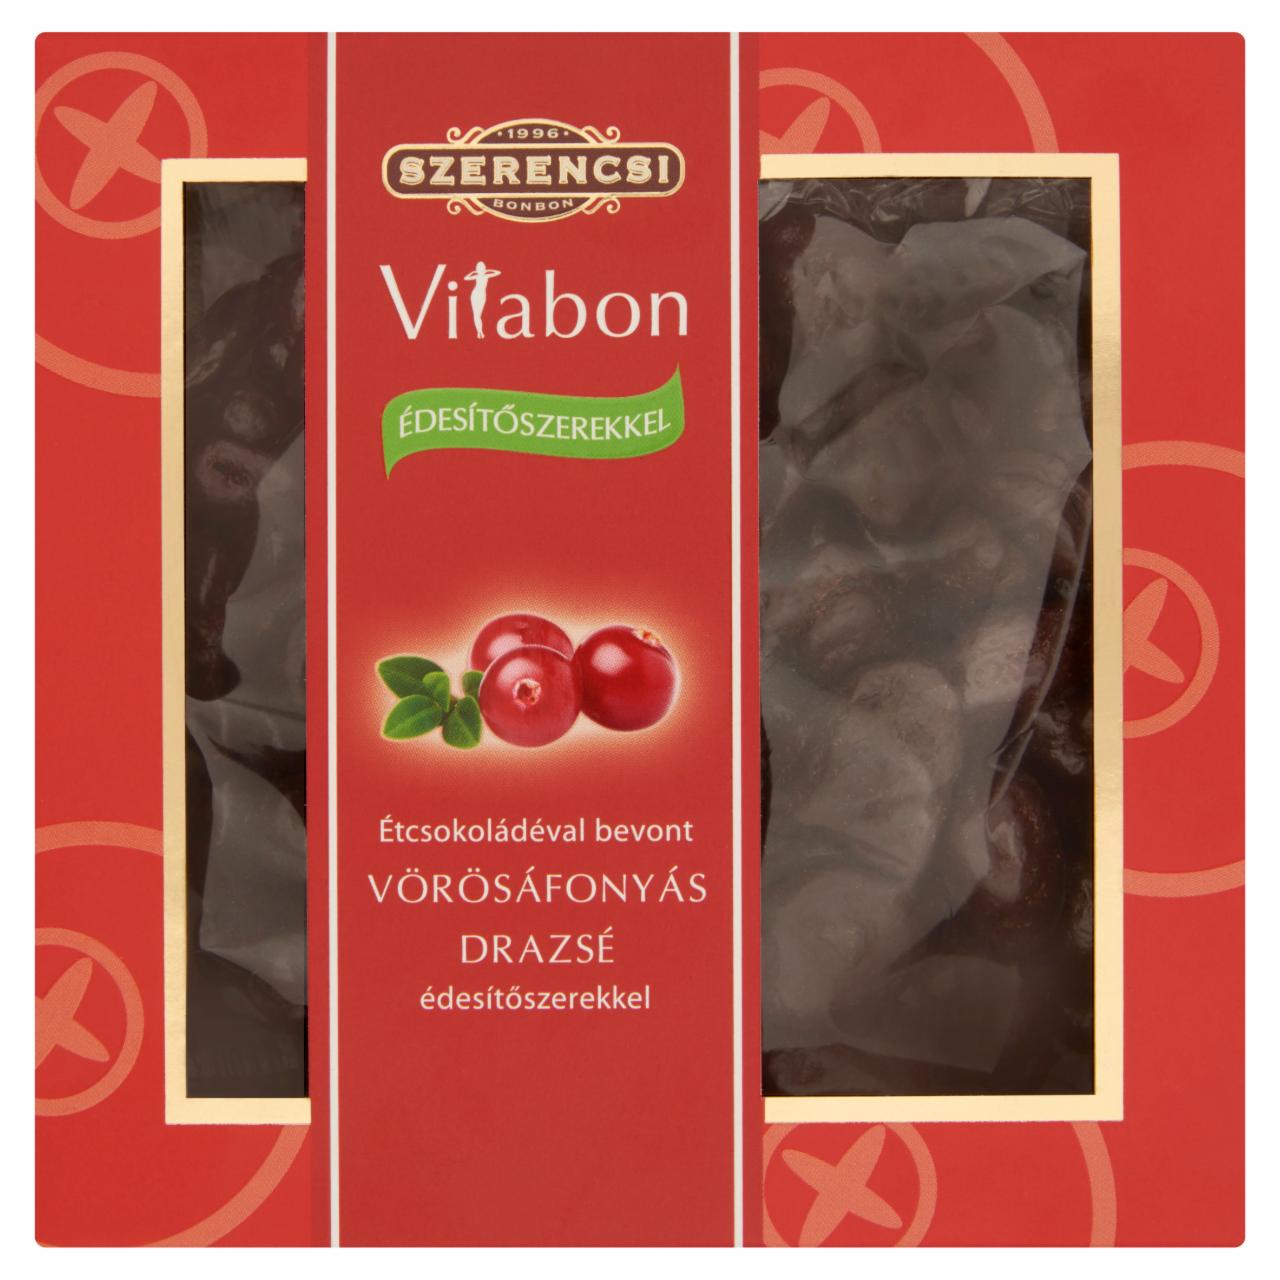 Képek - Szerencsi Vitabon étcsokoládéval bevont vörösáfonyás drazsé édesítőszerekkel 150 g